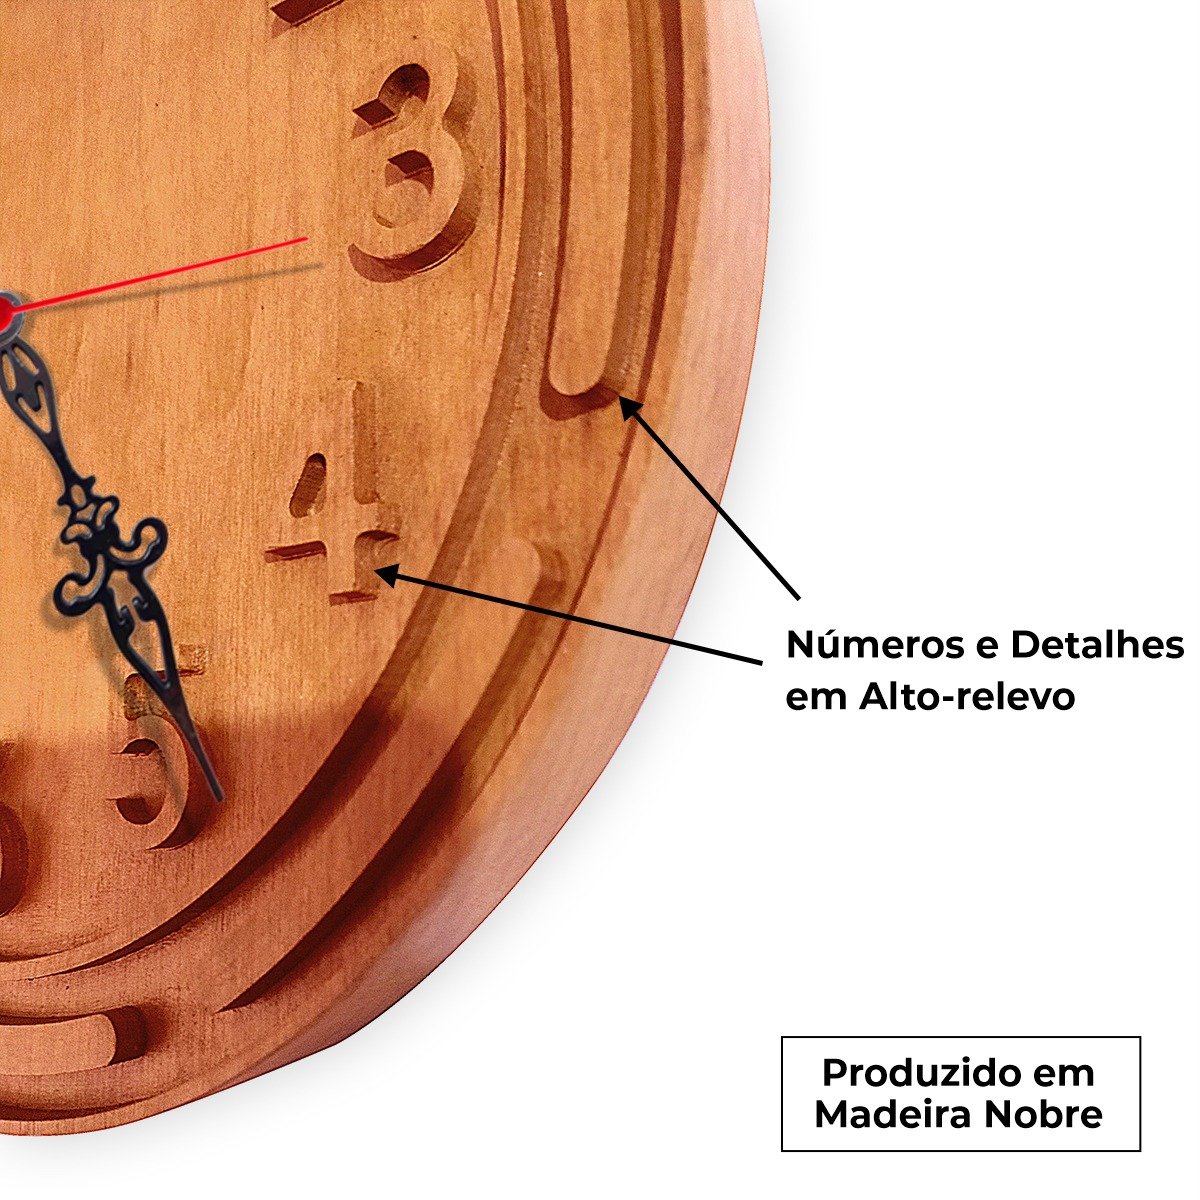 Relógio Parede Astanna Artesanal Madeira Nobre Alto Padrão - 3